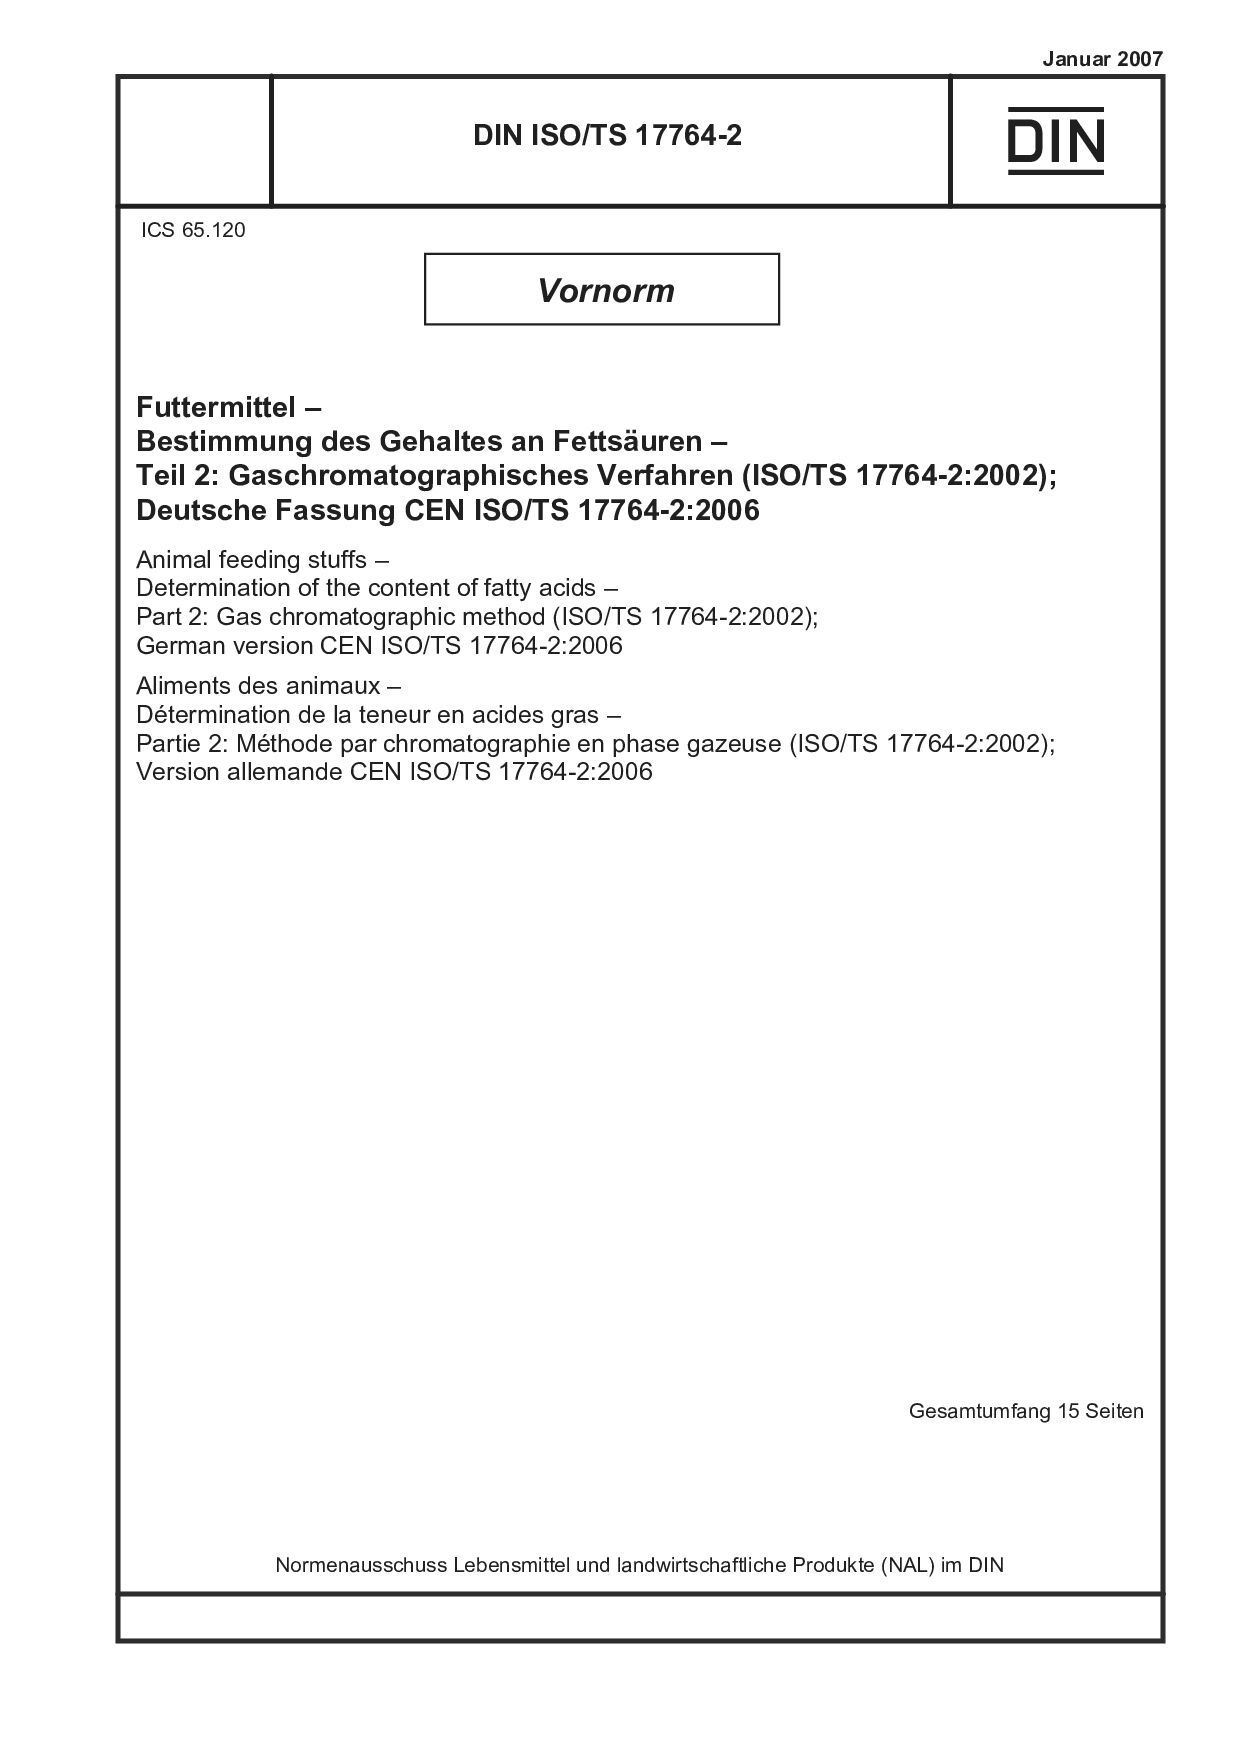 DIN ISO/TS 17764-2:2007